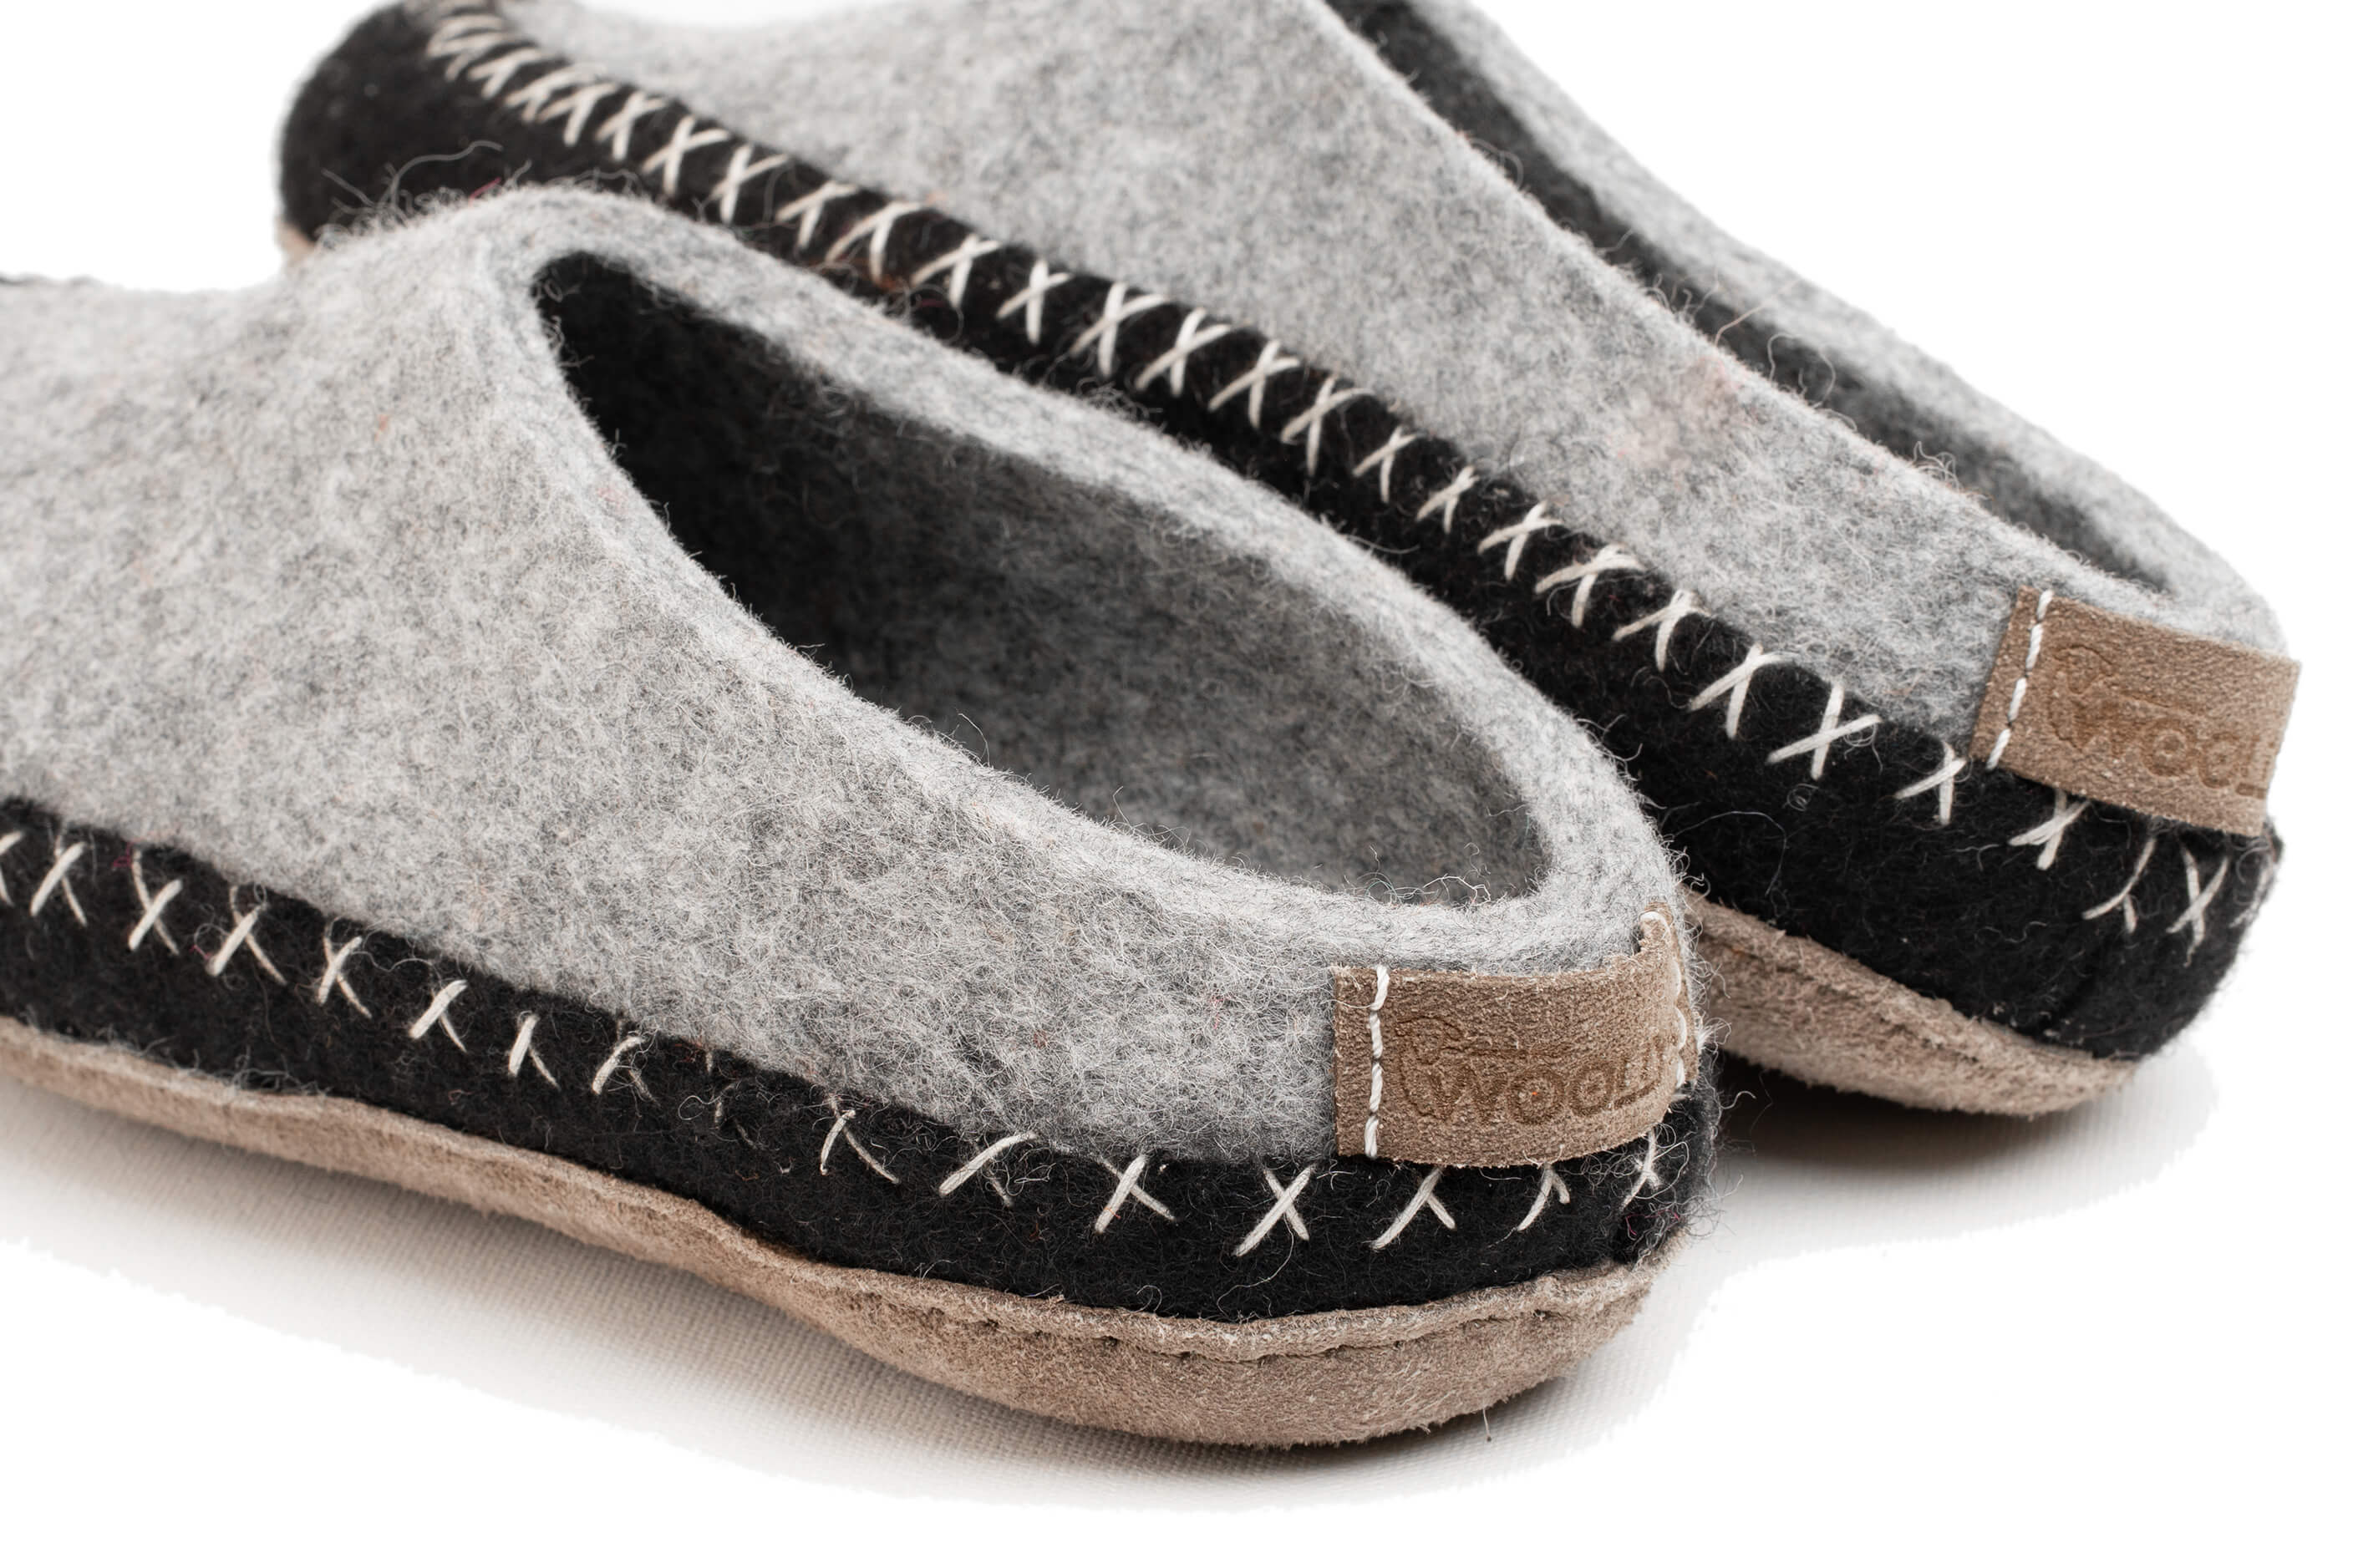 Indoor Open Heel Slipper With Leather Sole - Black & Grey